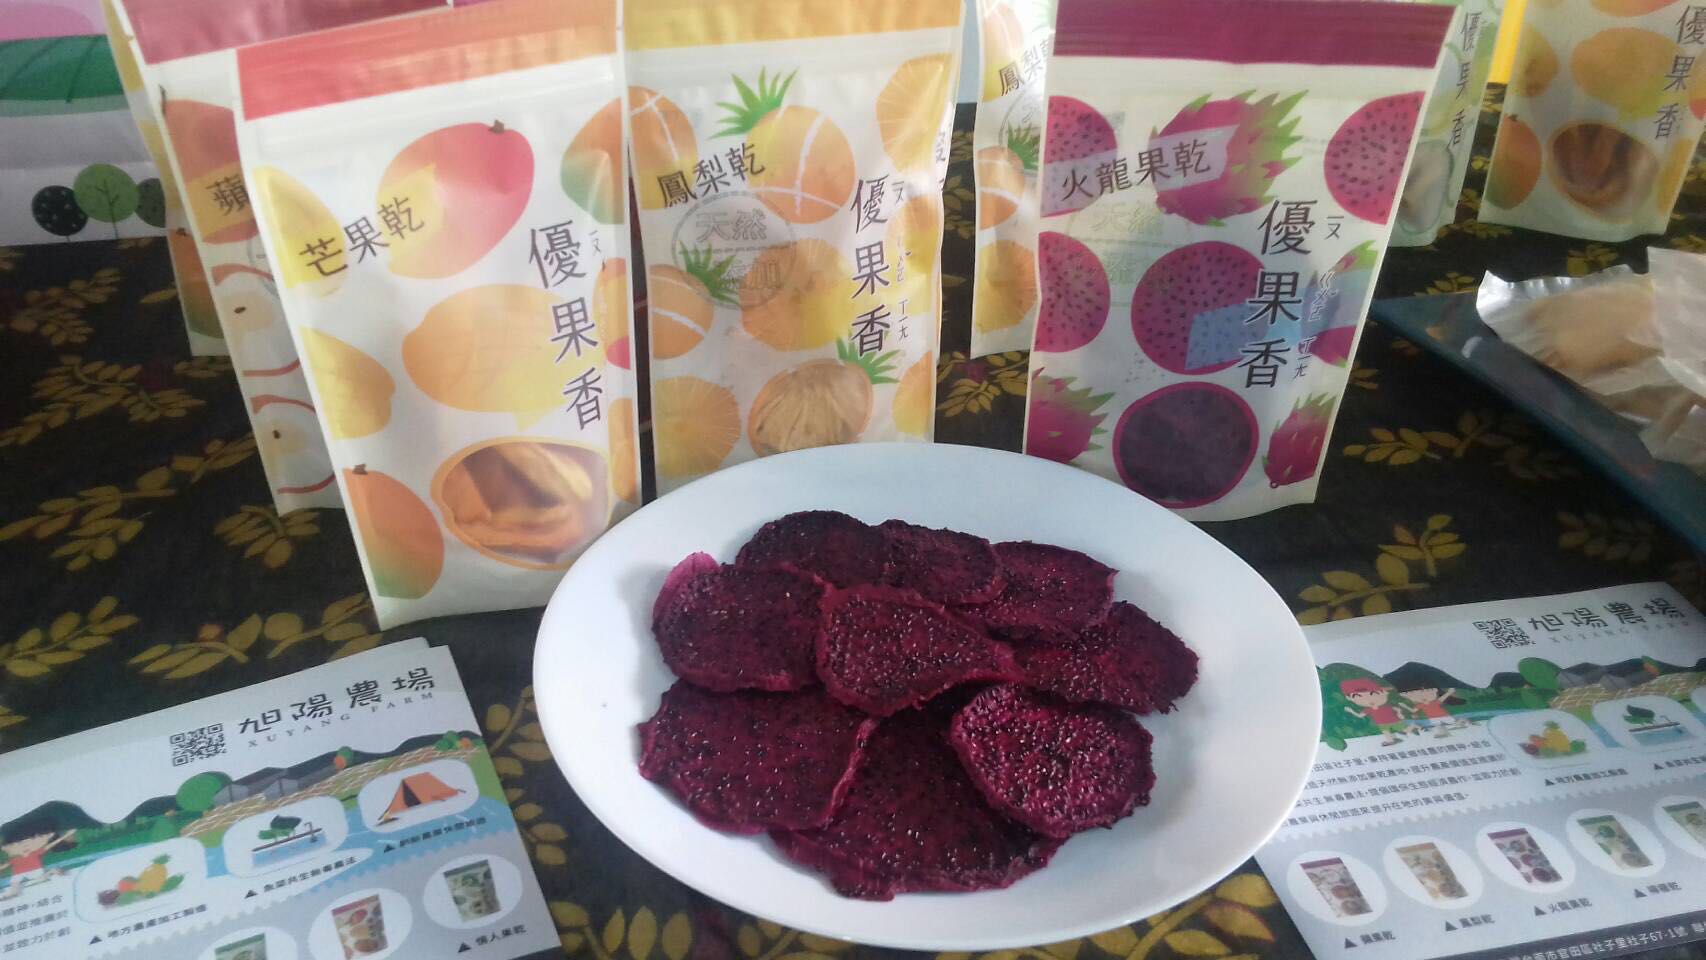 農糧署南區分署輔導旭陽農場開發出多元紅龍果加工產品，自有品牌「優果香」。